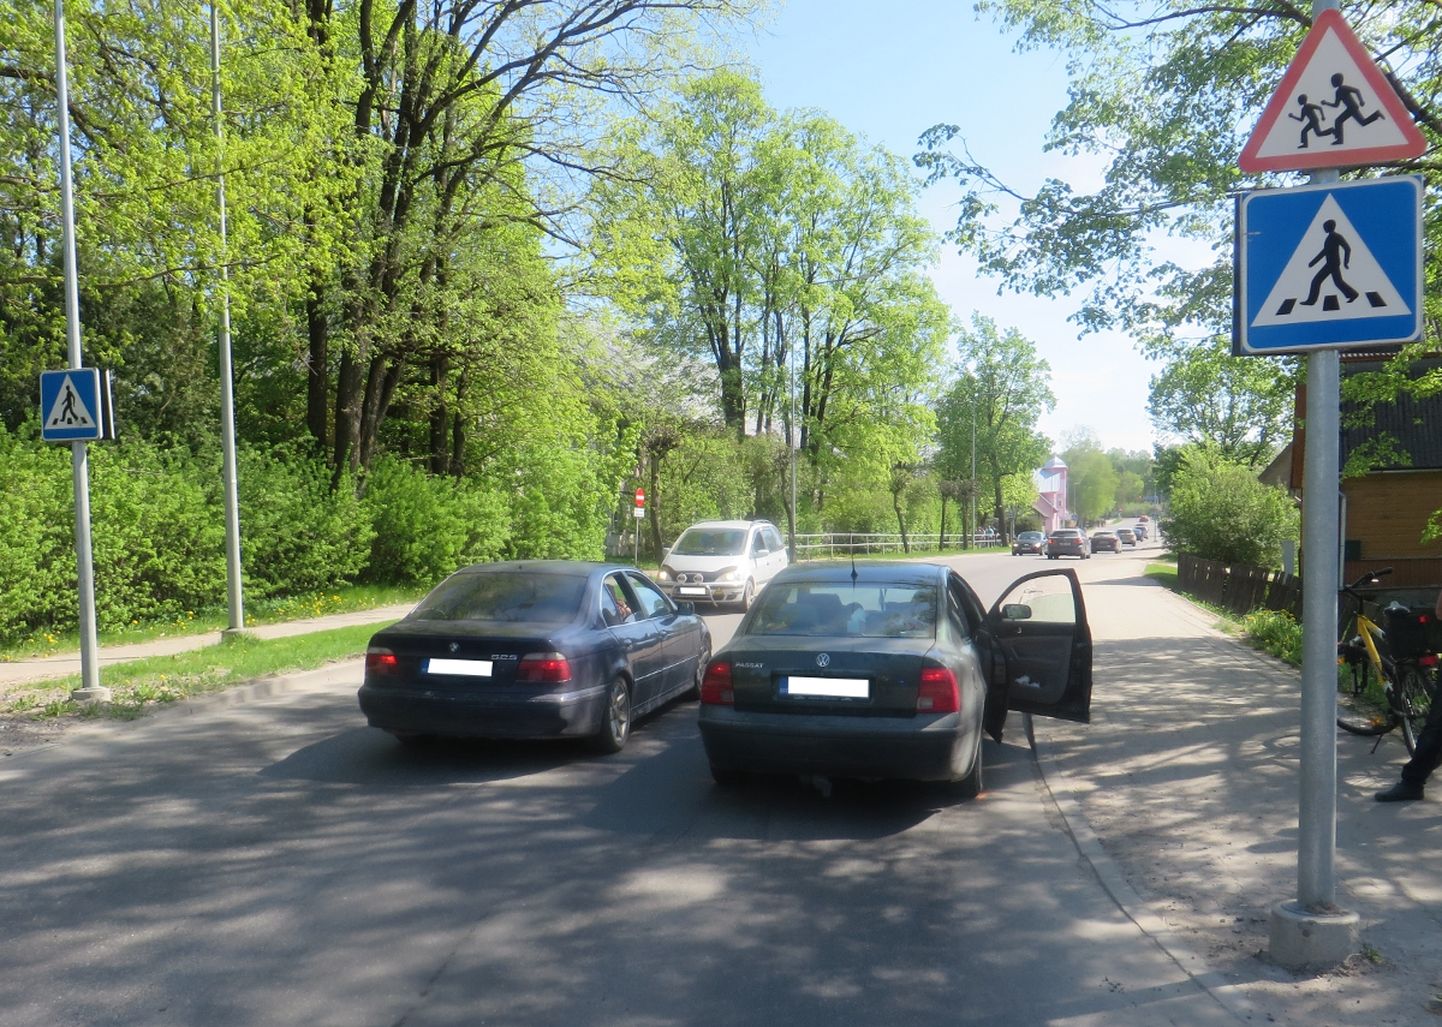 Liiklusõnnetus Võru linnas Kreutzwaldi ja Metsa tänavate ristmikul.